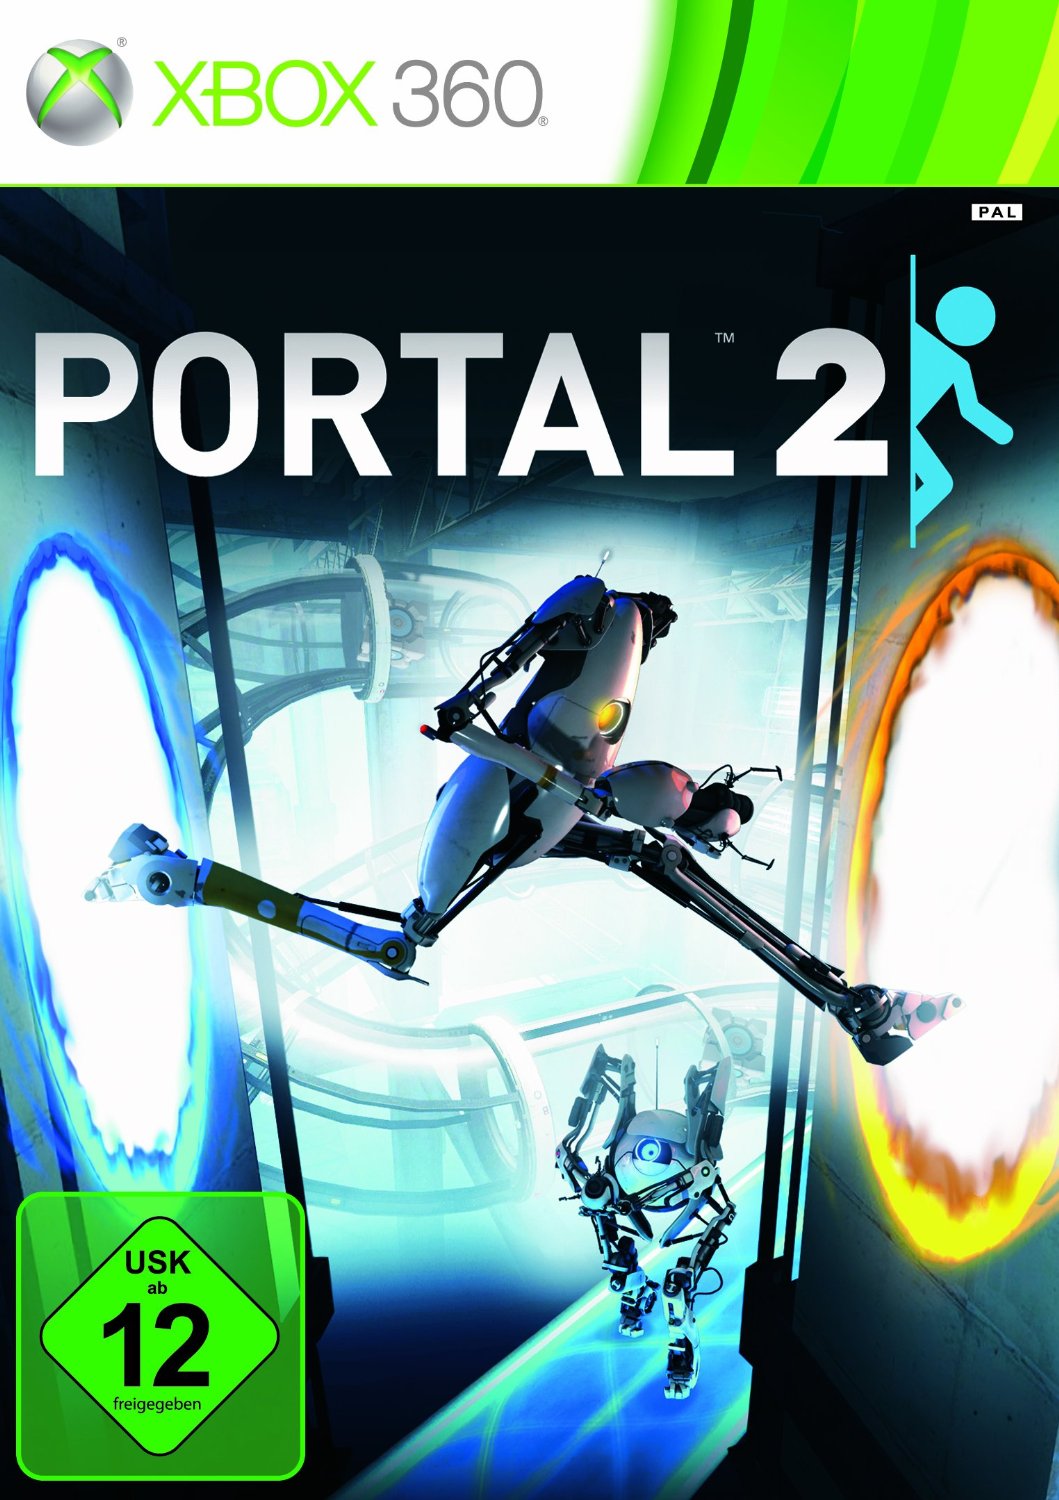 Portal 2 no dvd фото 98